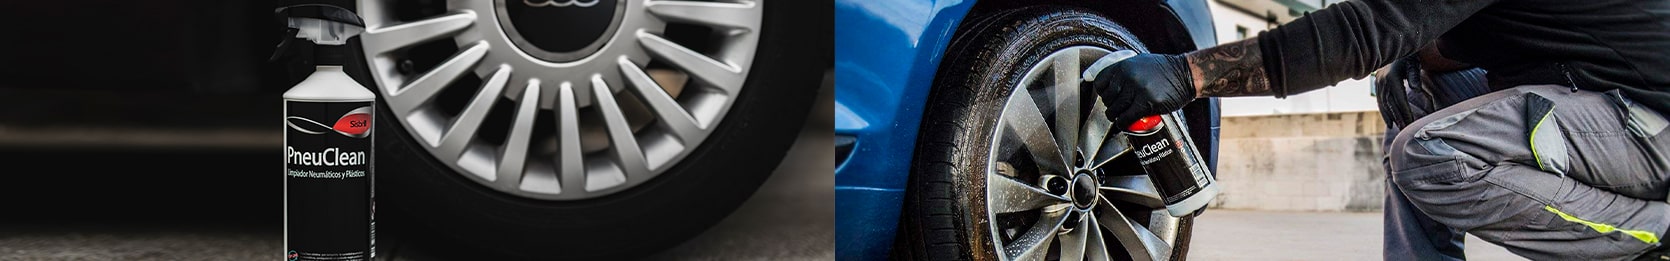 Sisbrill PneuClean limpiador de neumáticos y plásticos pulverizado sobre rueda de coche Opel azul